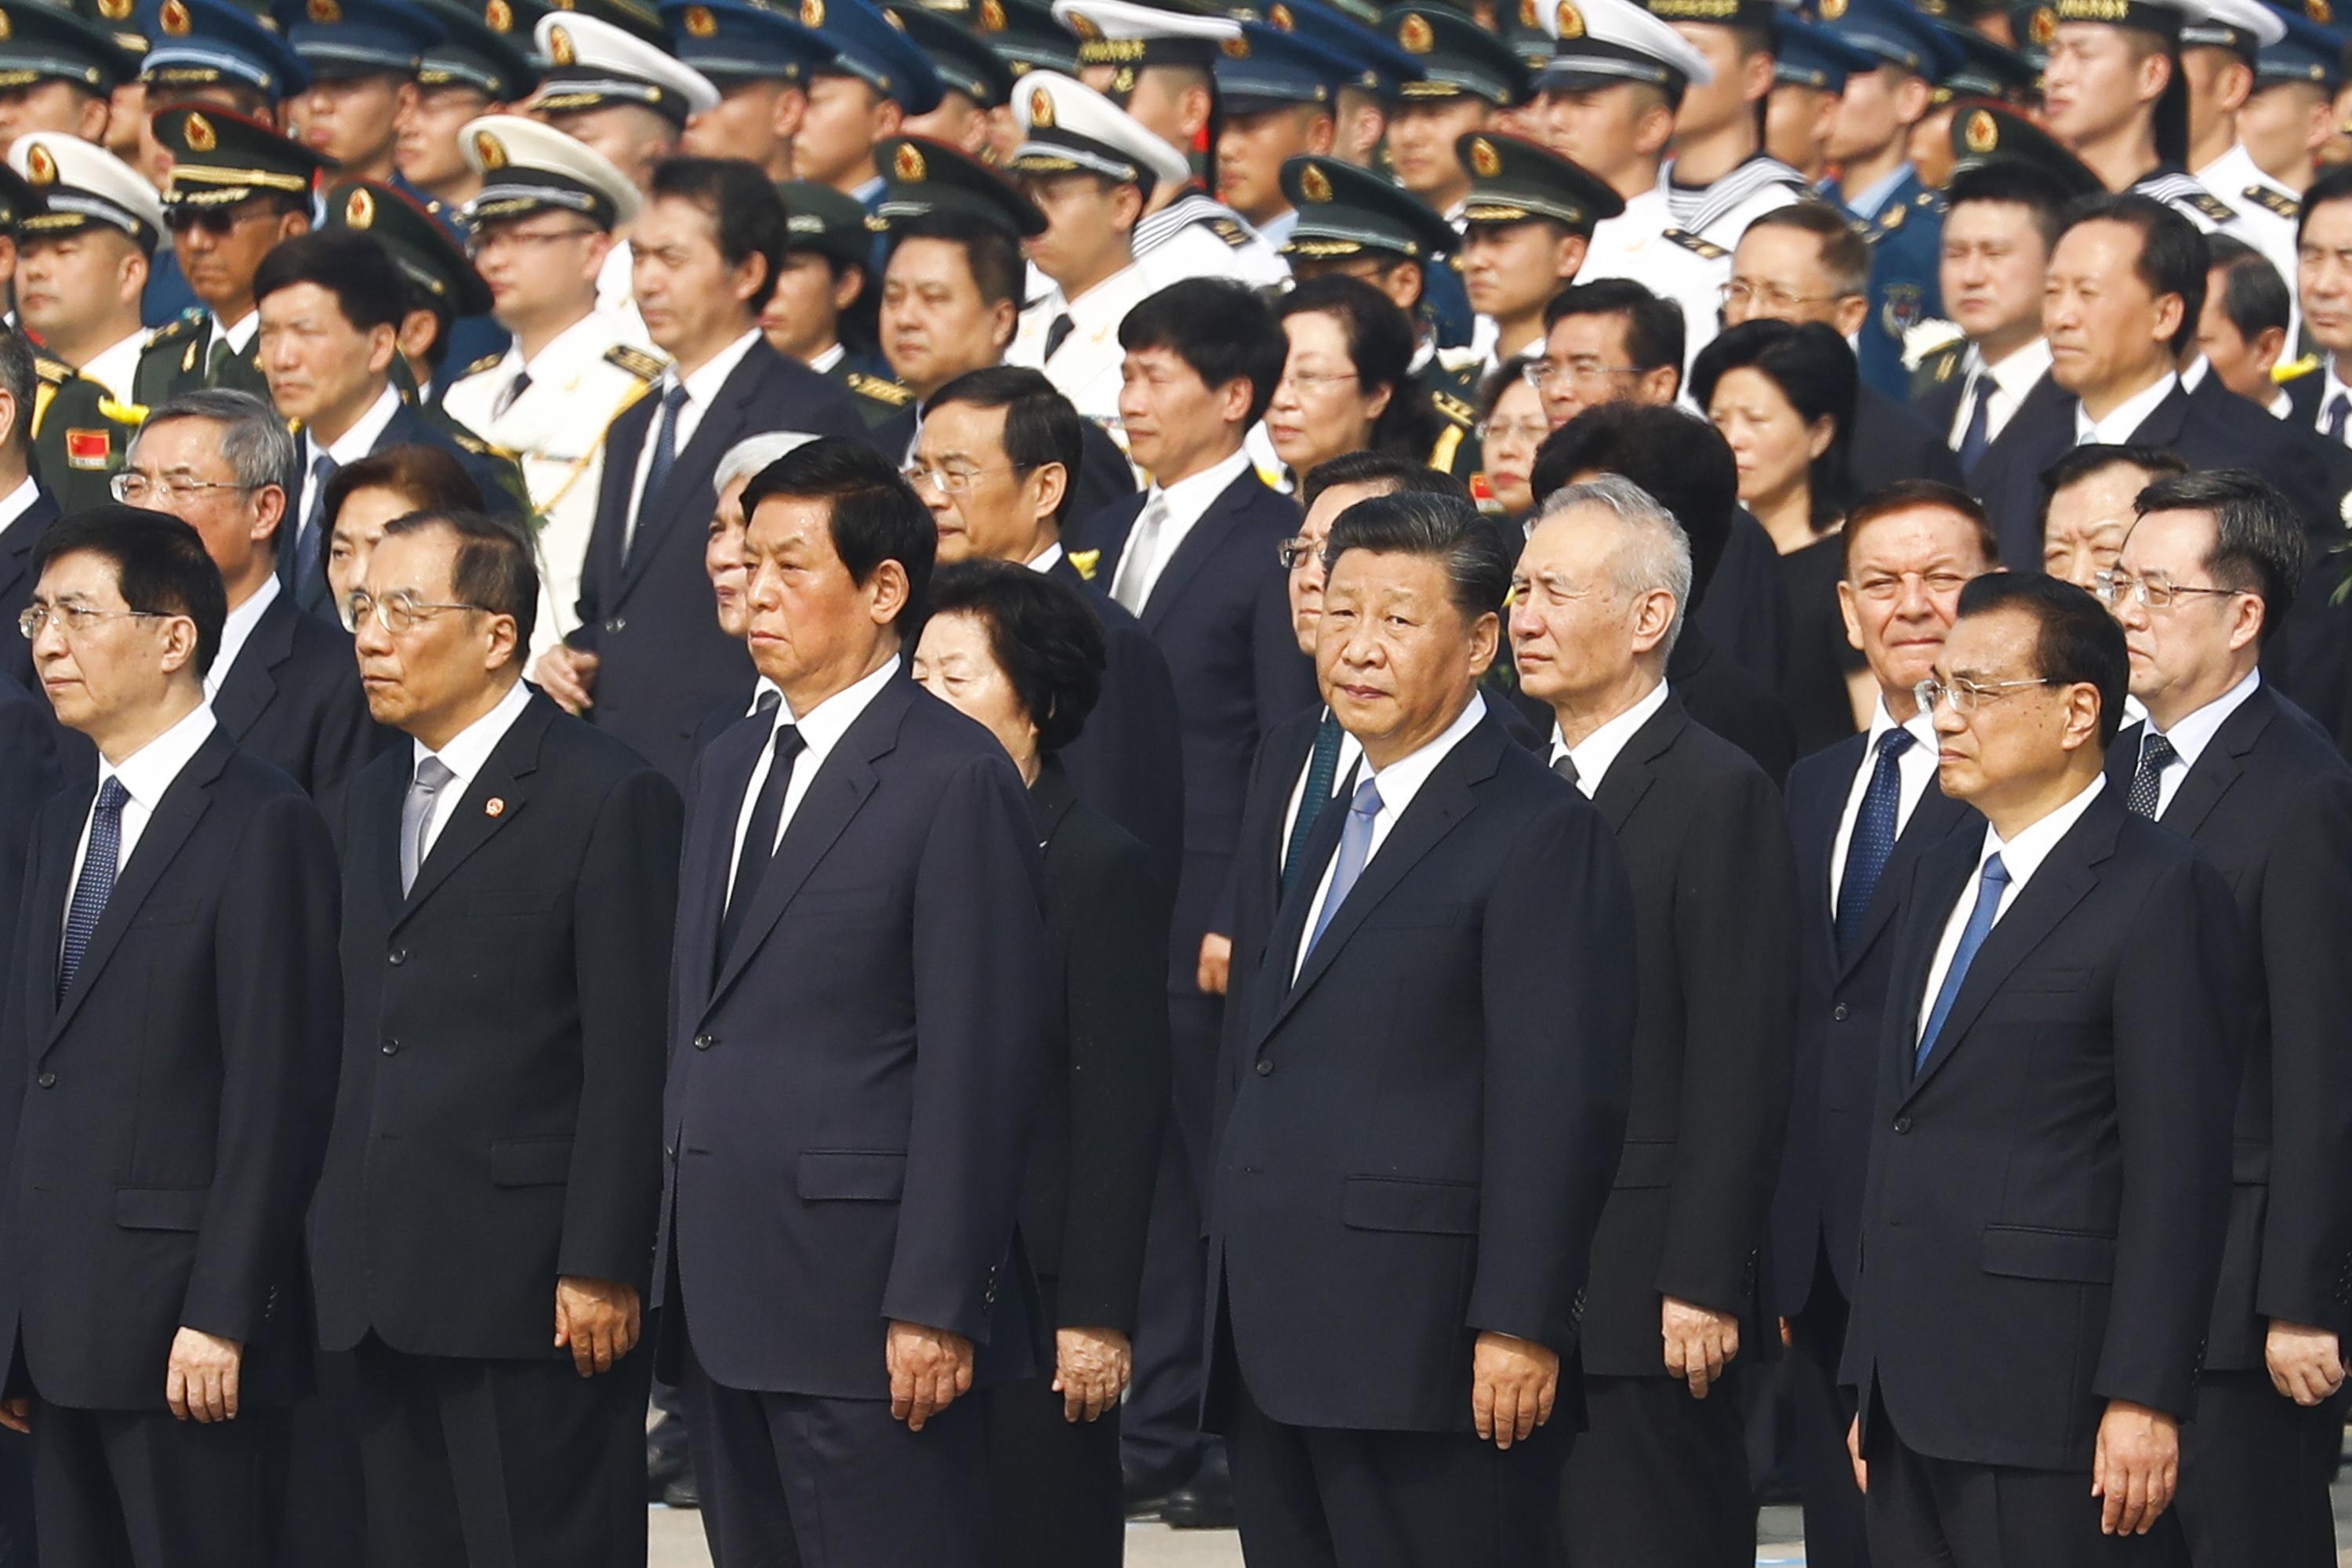 Il presidente cinese Xi Jinping, insieme agli altri leader cinesi in attesa della cerimonia di deposizione della corona in Piazza Tiananmen, a Pechino